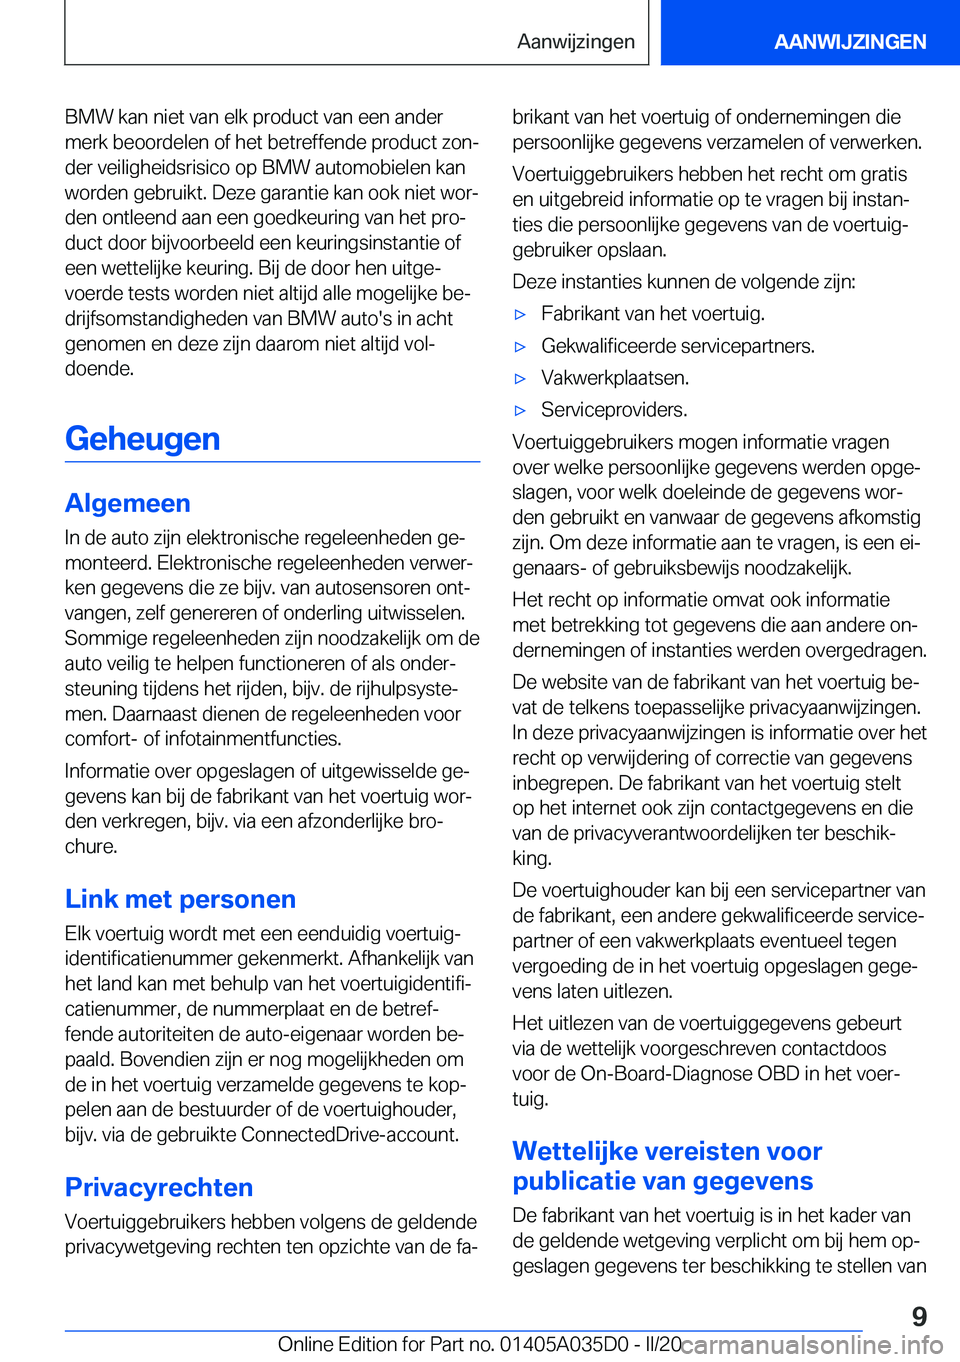 BMW X4 2020  Instructieboekjes (in Dutch) �B�M�W��k�a�n��n�i�e�t��v�a�n��e�l�k��p�r�o�d�u�c�t��v�a�n��e�e�n��a�n�d�e�r�m�e�r�k��b�e�o�o�r�d�e�l�e�n��o�f��h�e�t��b�e�t�r�e�f�f�e�n�d�e��p�r�o�d�u�c�t��z�o�nj
�d�e�r��v�e�i�l�i�g�